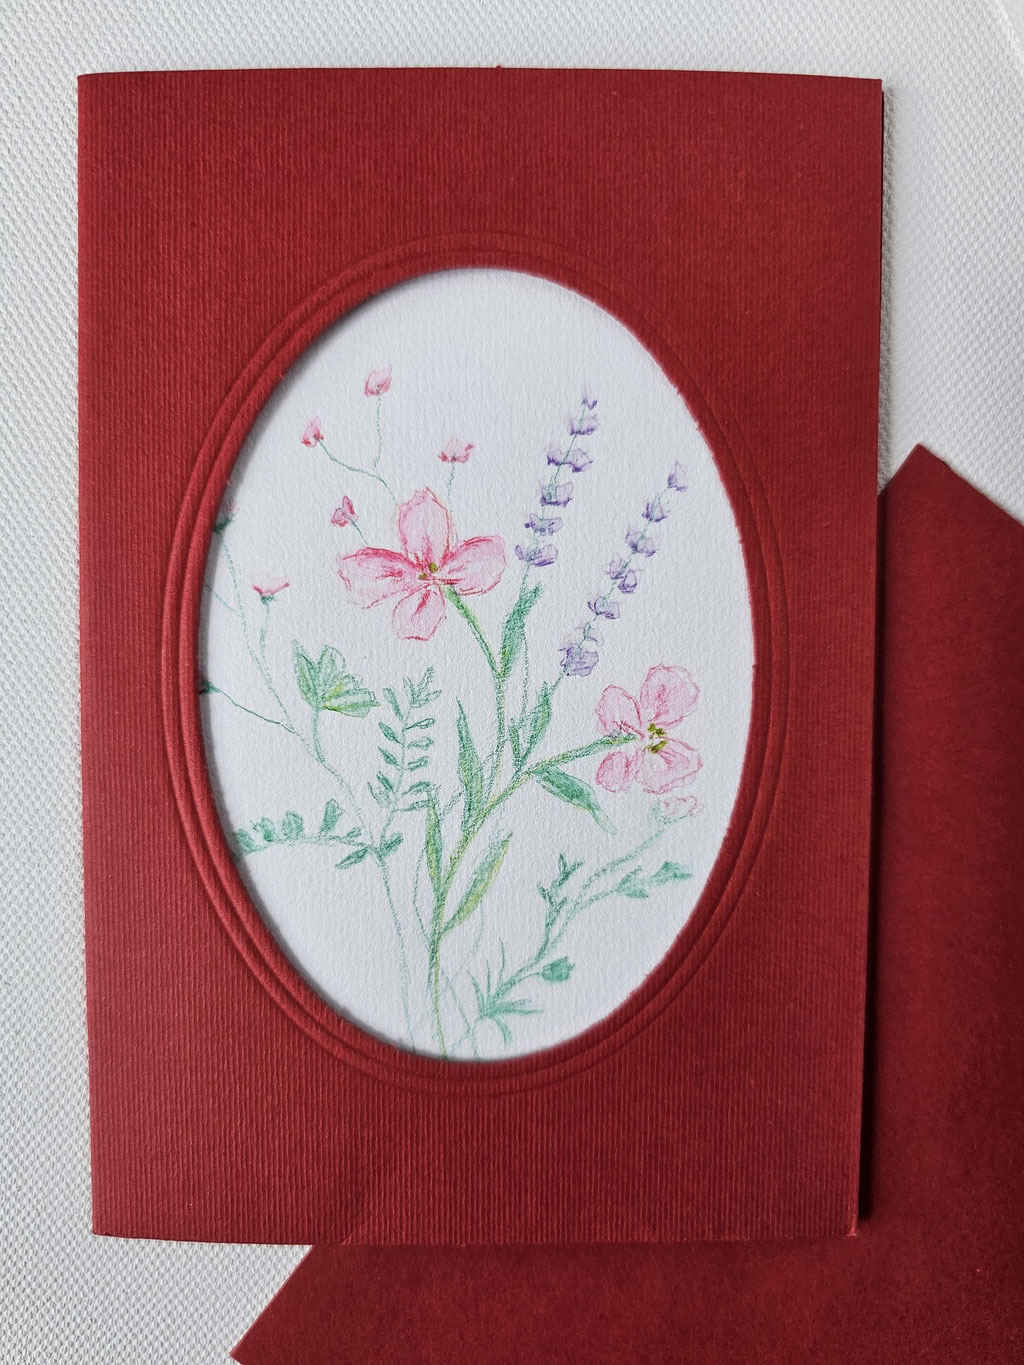 Besondere Geburtstagskarte: gemaltes Aquarellbild zarte Blumen